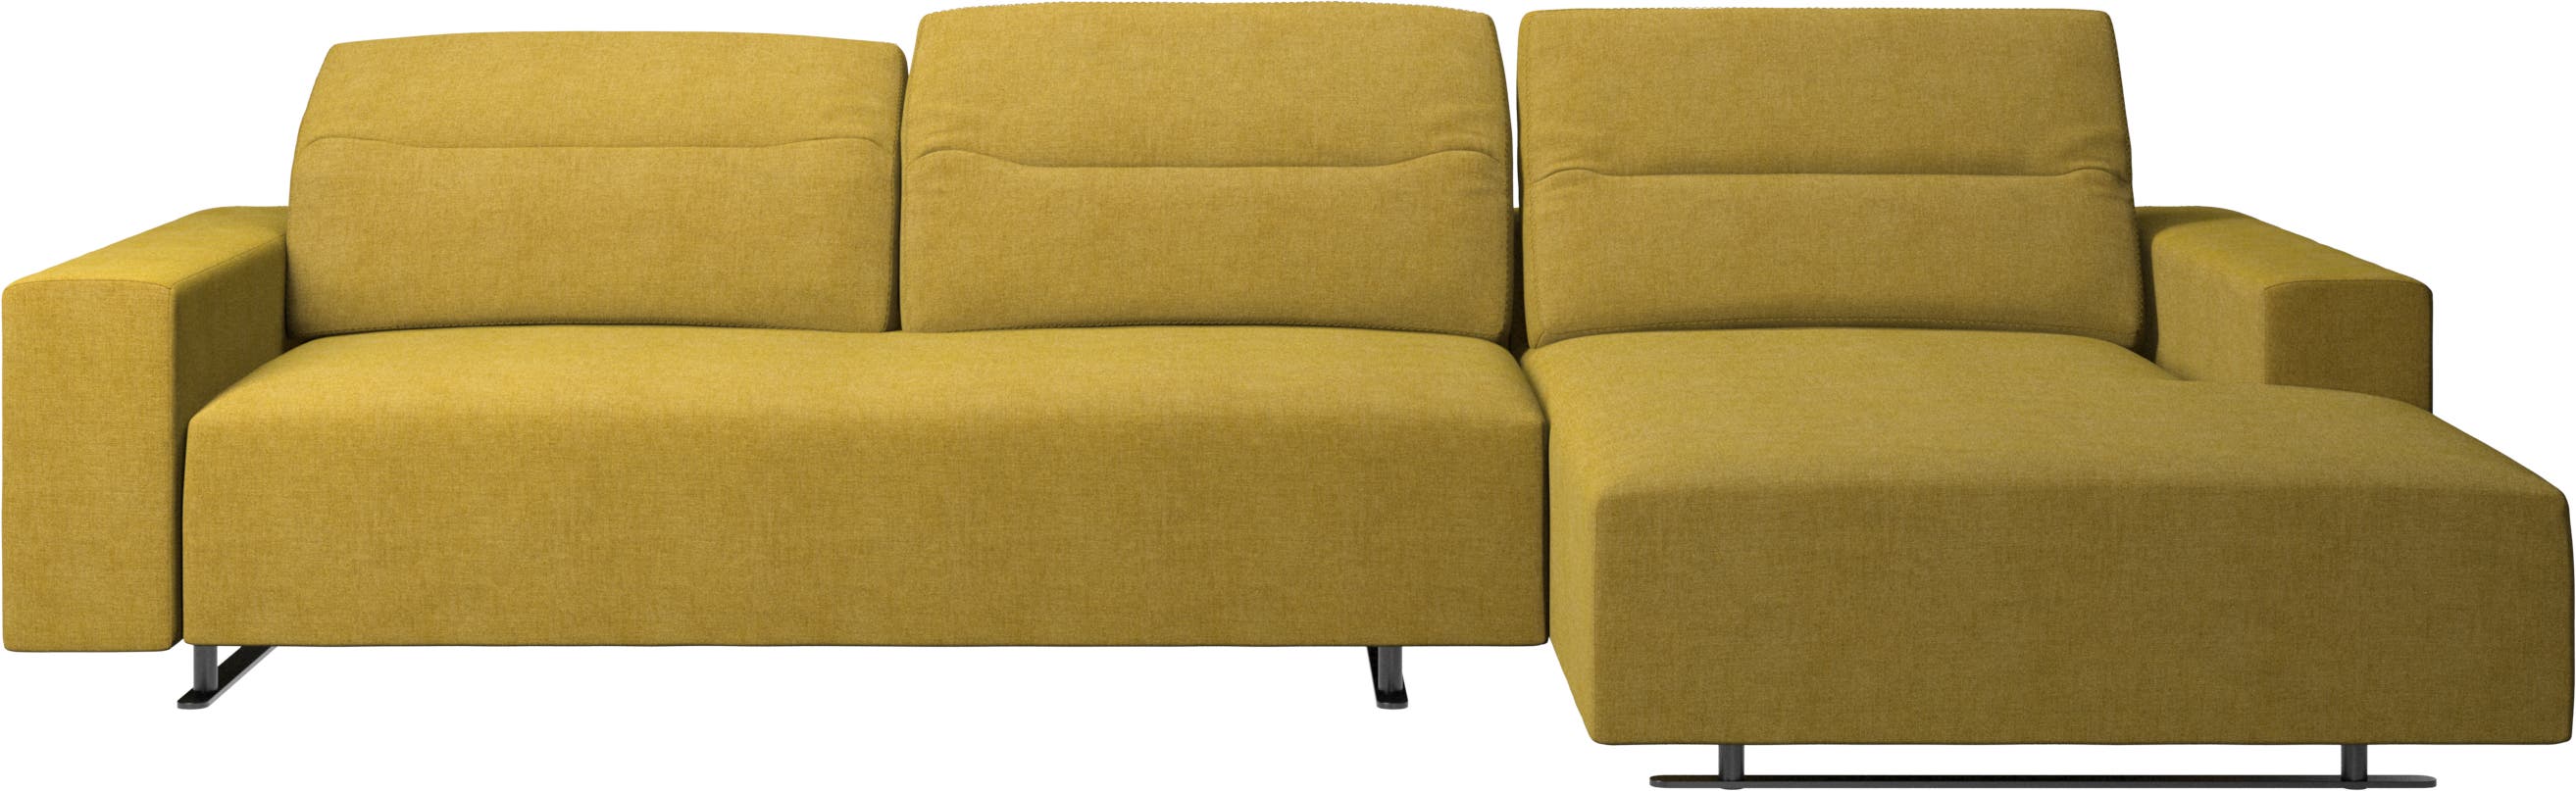 Hampton sofa med justerbar rygg, hvilemodul og oppbevaring høyre side